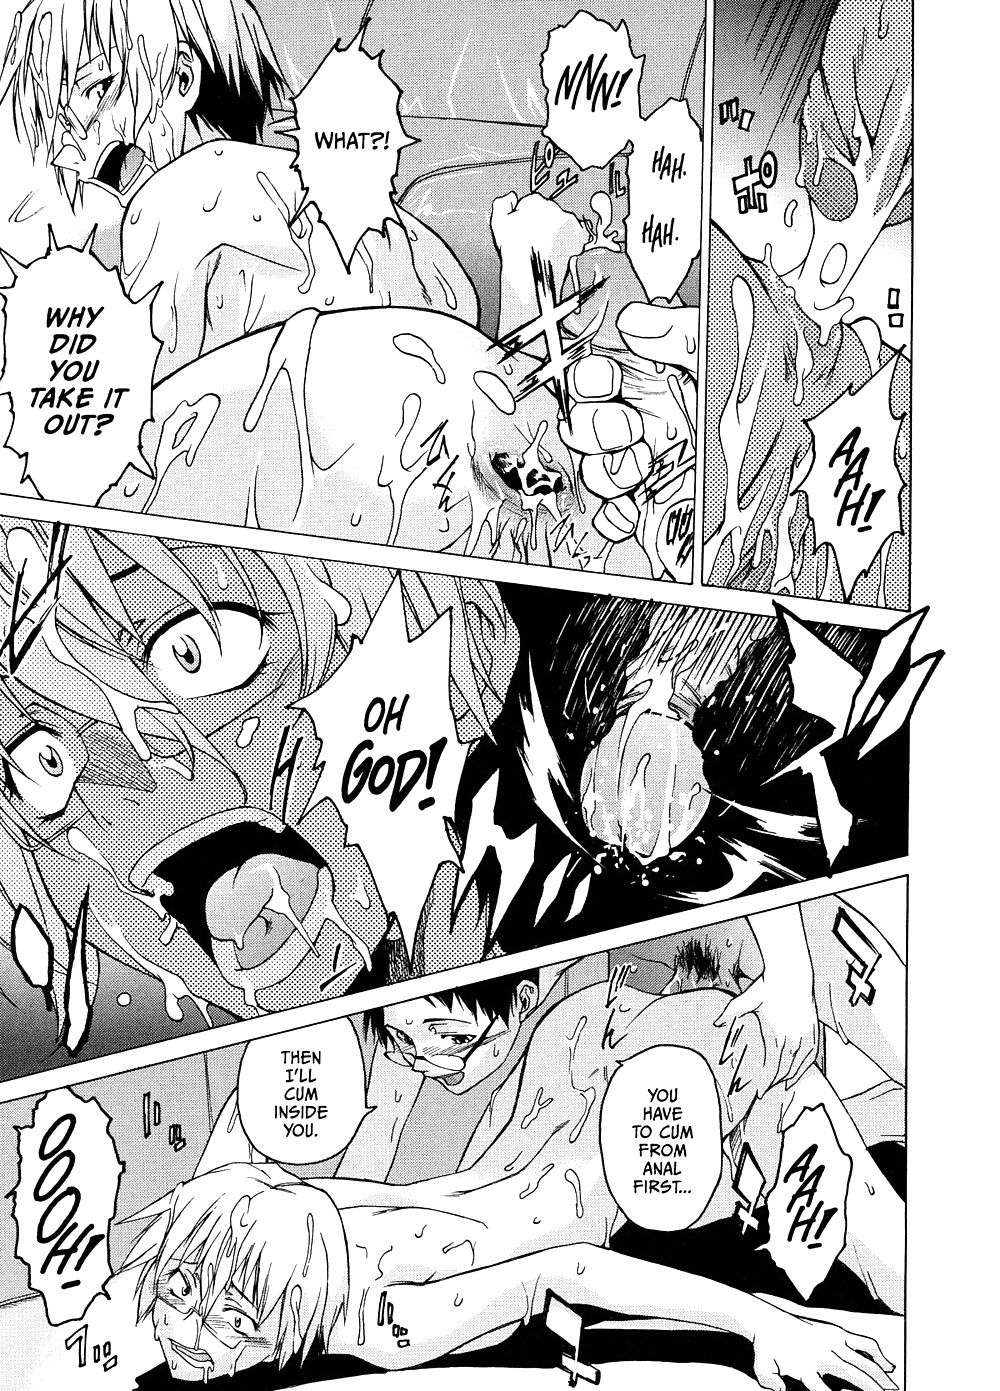 Domin-8 Me ( Take On me ) Hentai Manga Part 2 (15/98)